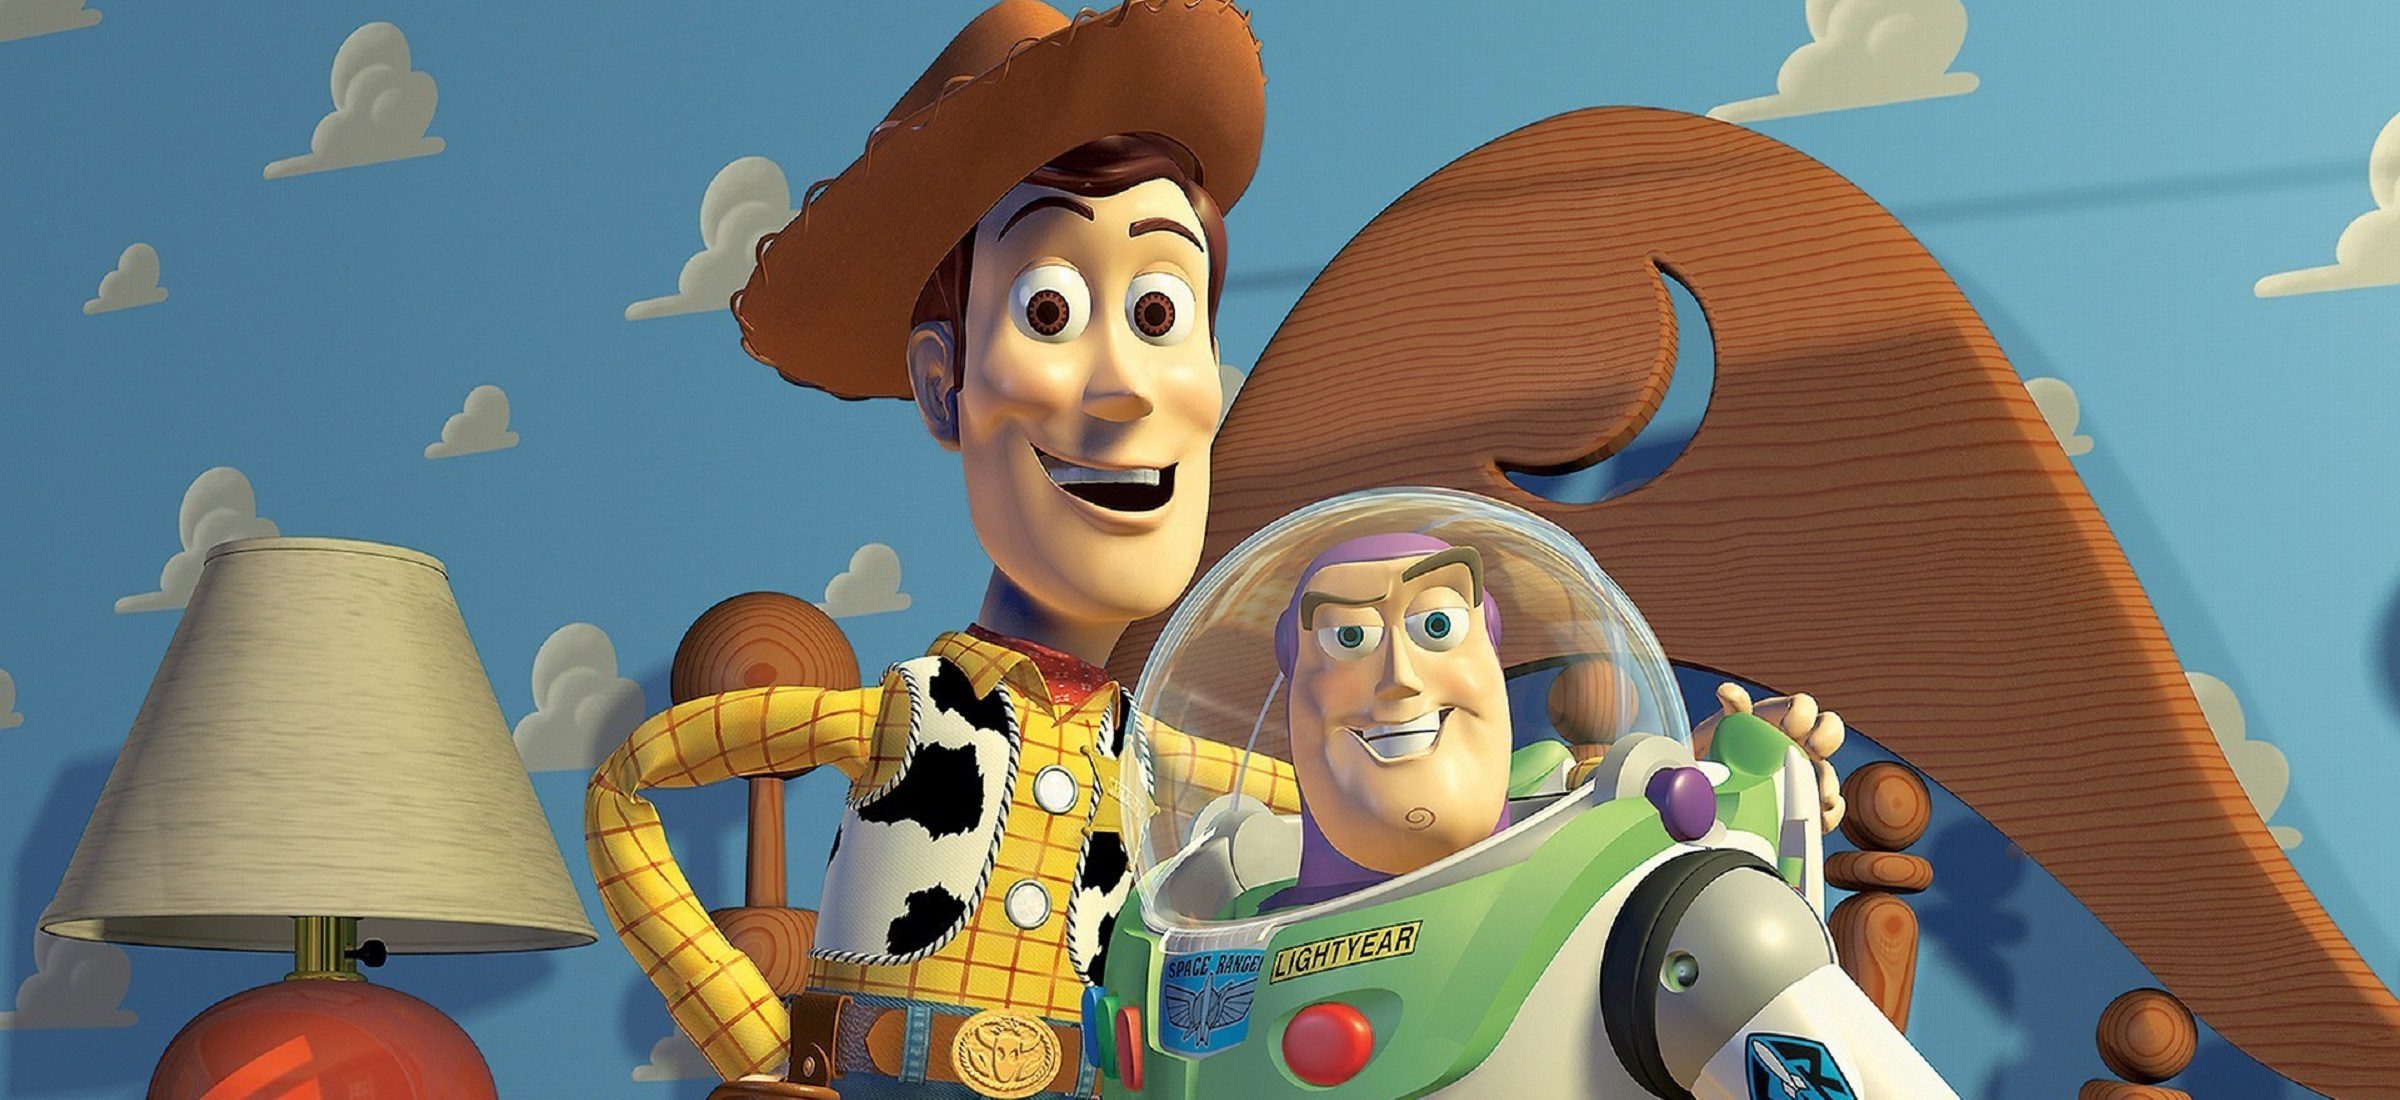 Kinder und Eltern lieben Pixar. Bevor die Macher von Toy Story Erfolg hatten, hatten sie einen langen und holprigen Weg hinter sich 129